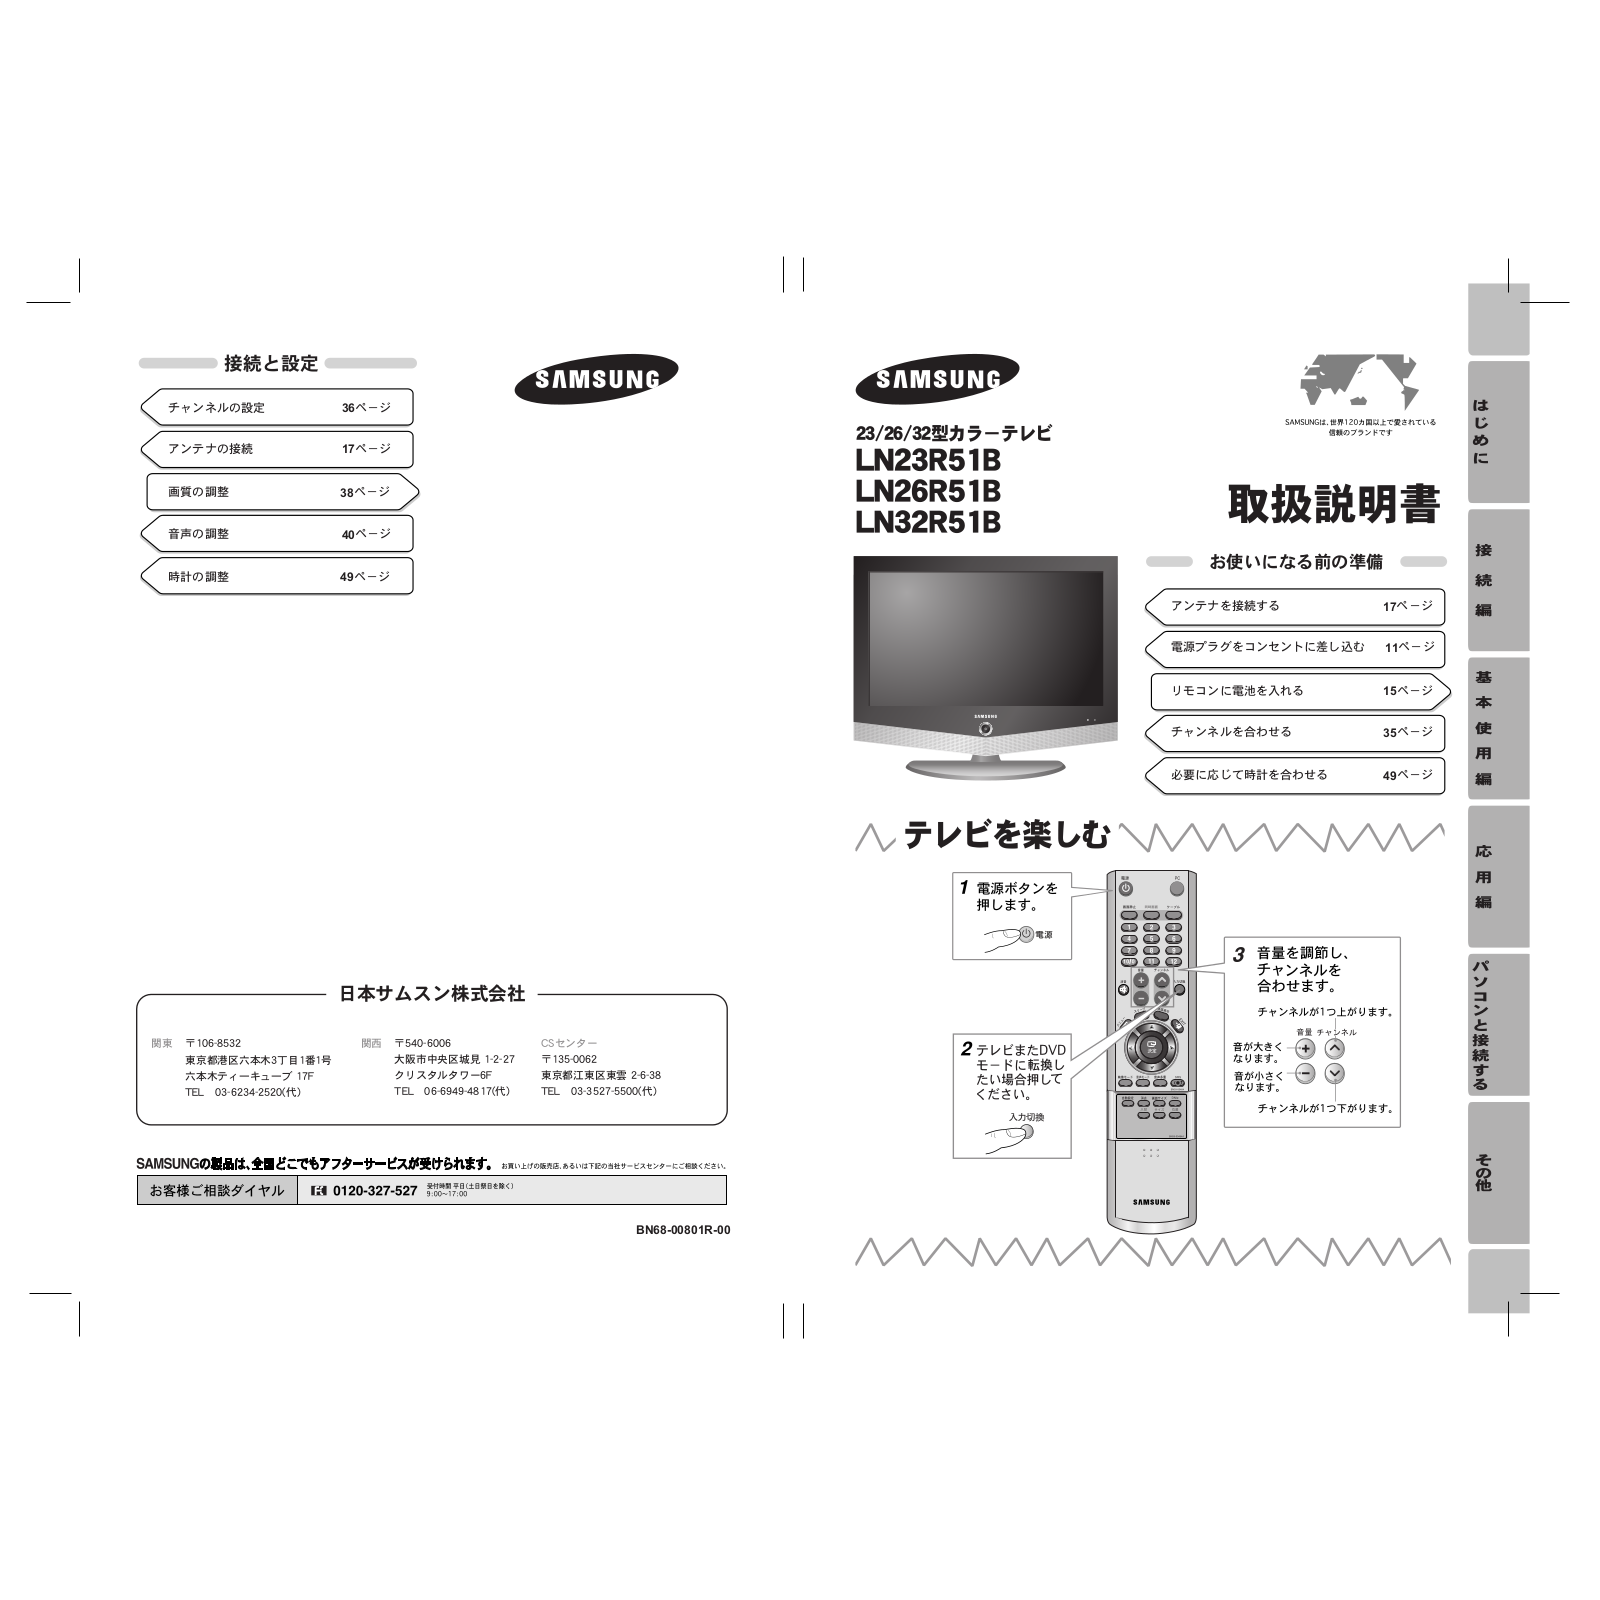 Samsung LN32R51B, LN26R51B, LN23R51BX, LN23R51B User Manual